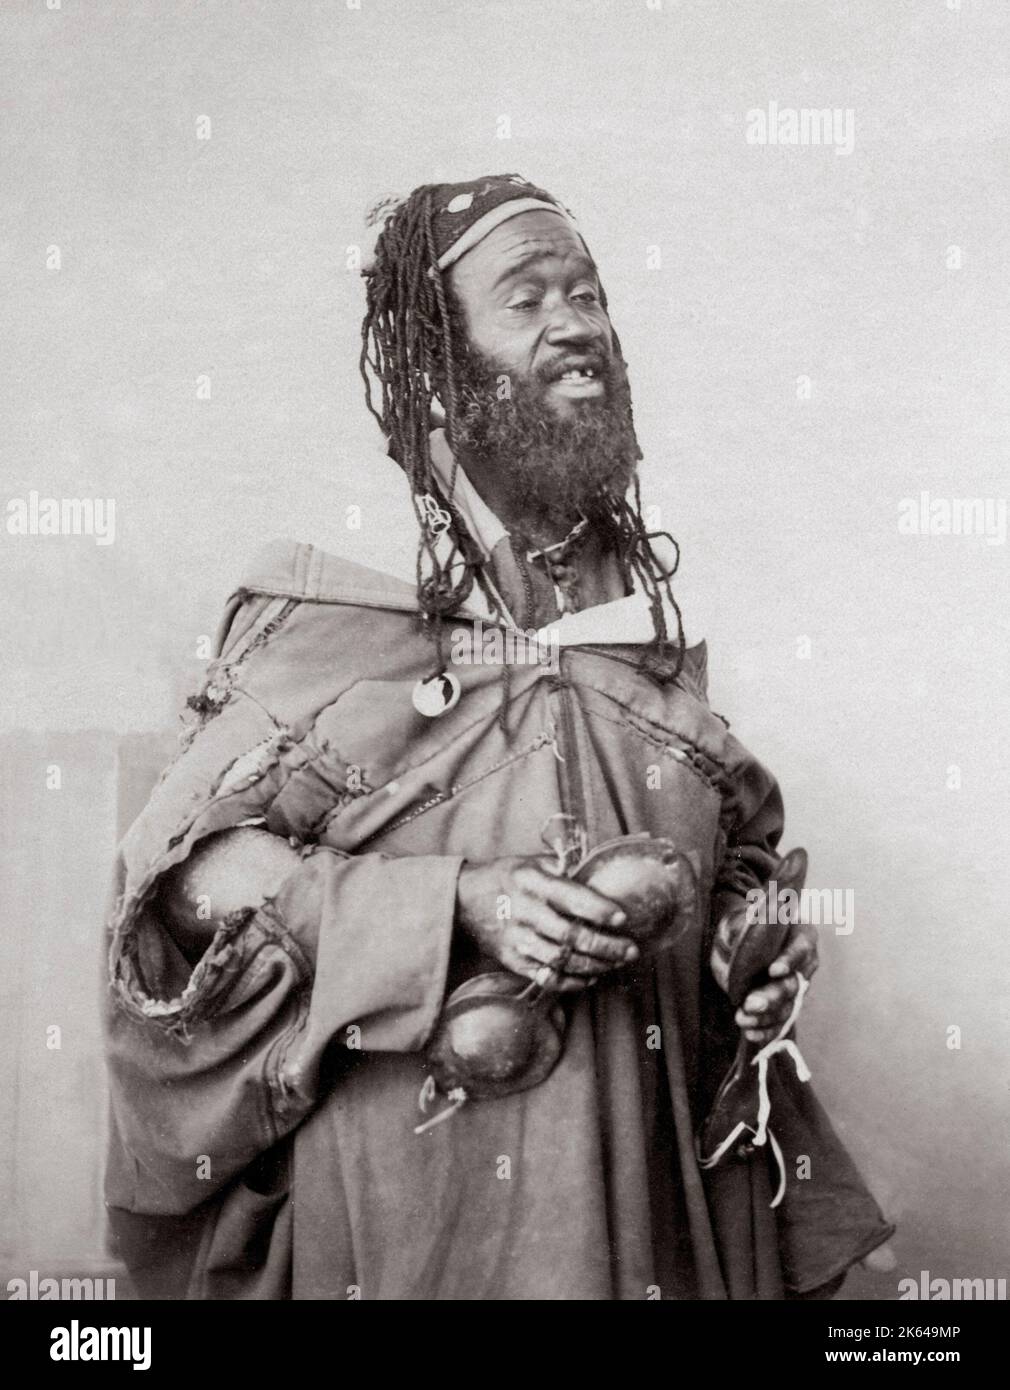 Chanteur arabe, Maroc, c.1900 Banque D'Images